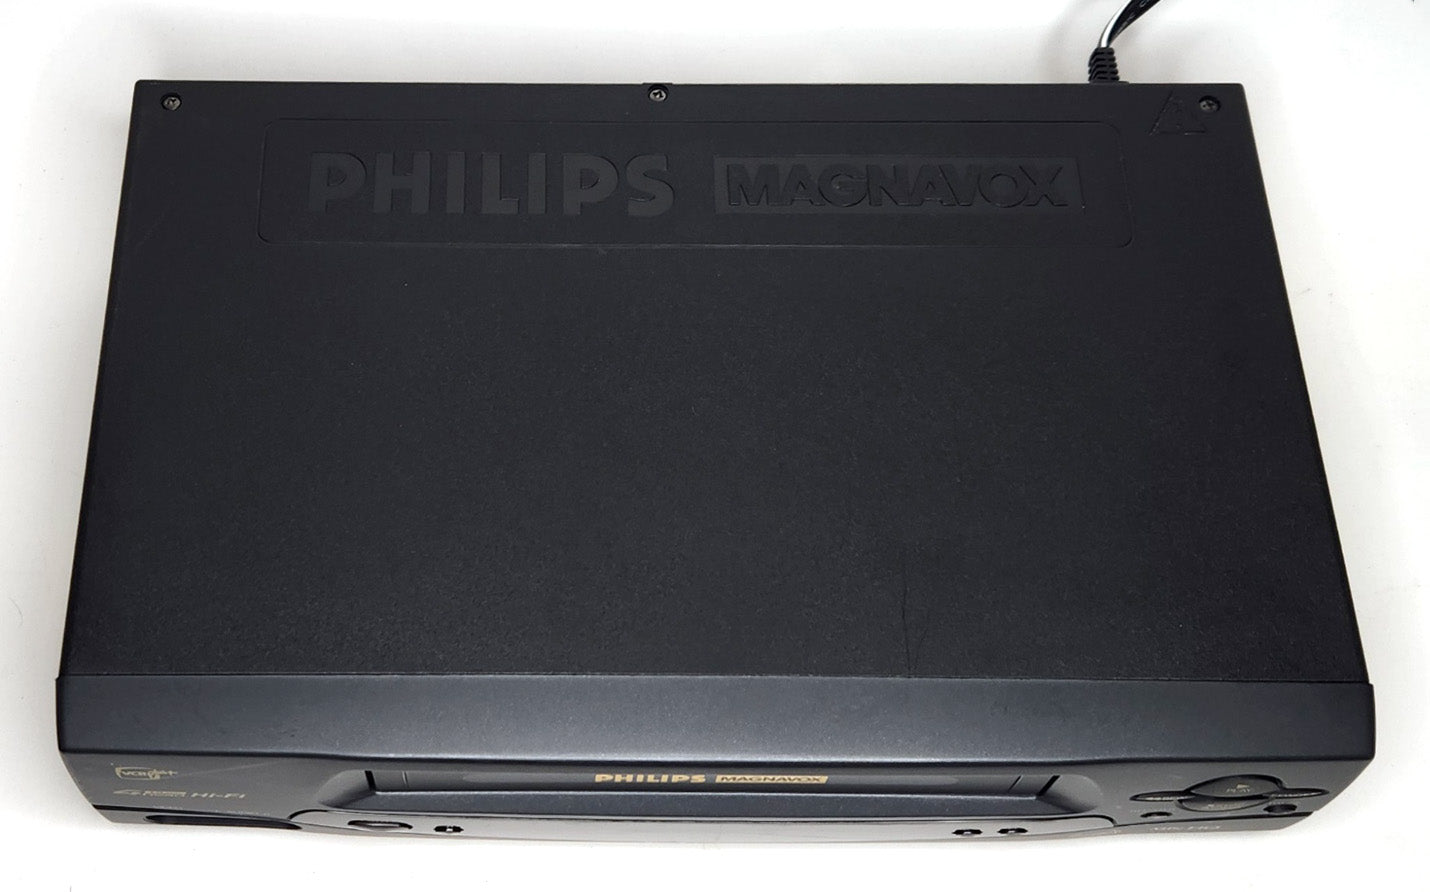 Philips Magnavox VRA631AT VCR, 4-Head Hi-Fi Stereo - Top